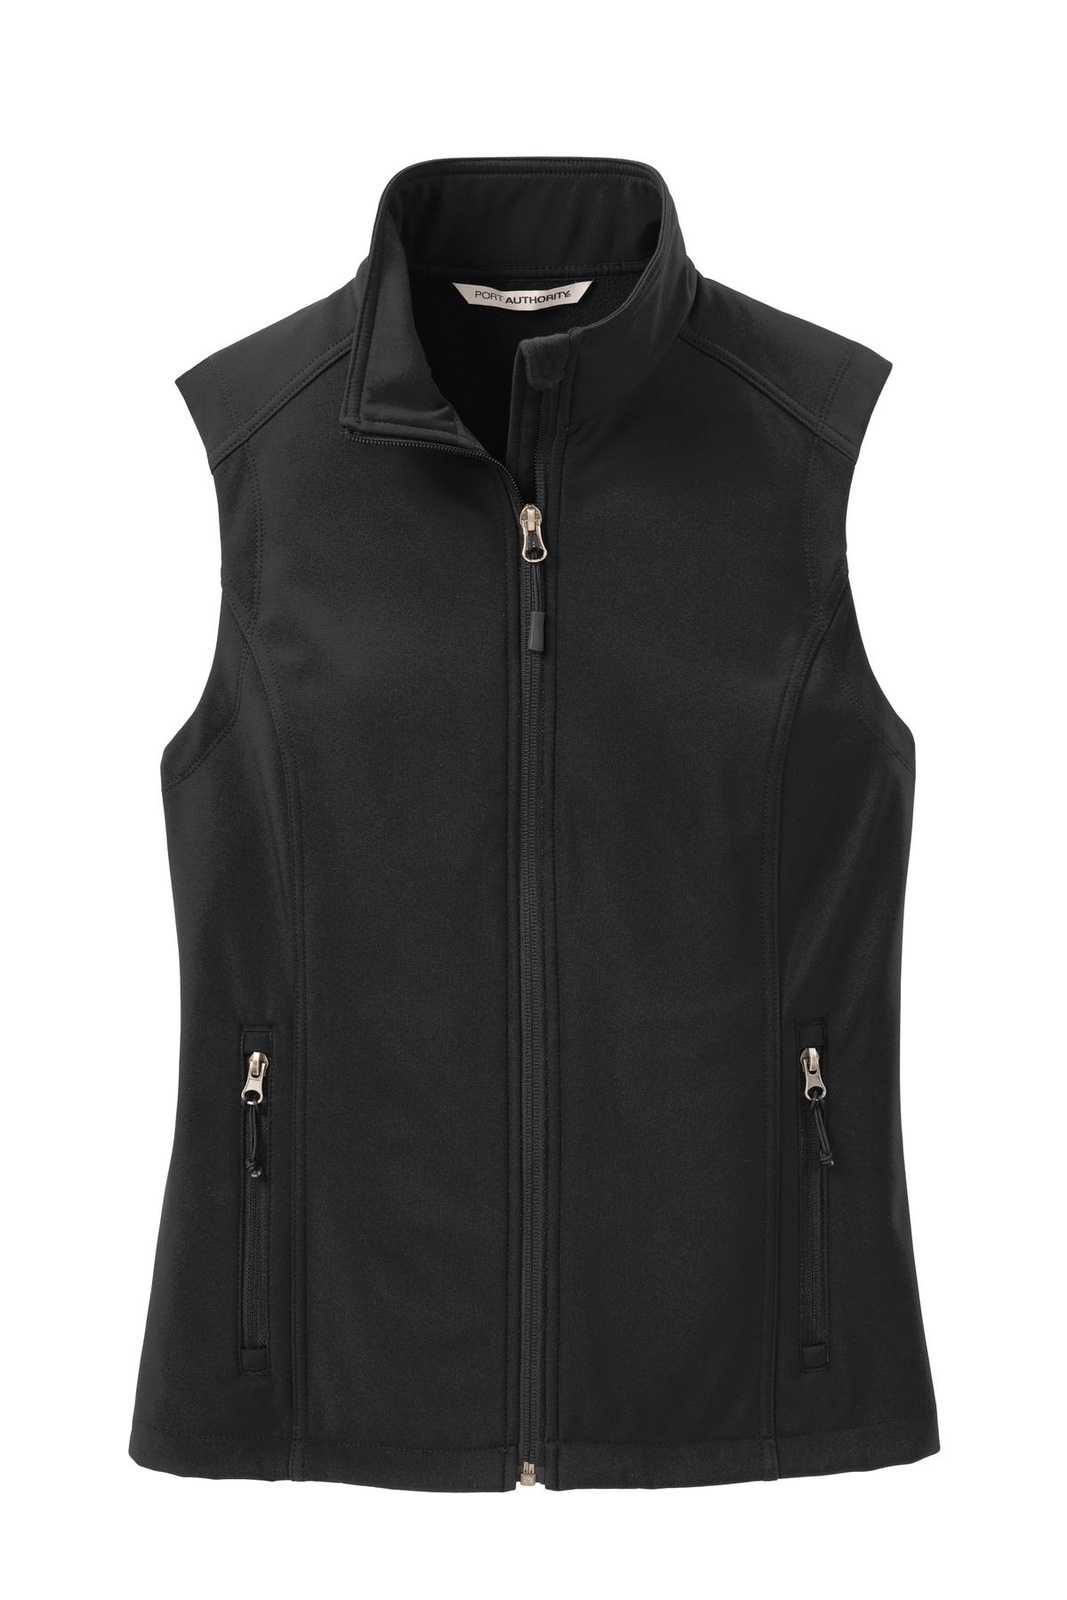 Port Authority L325 Ladies Core Soft Shell Vest - Black - HIT a Double - 5